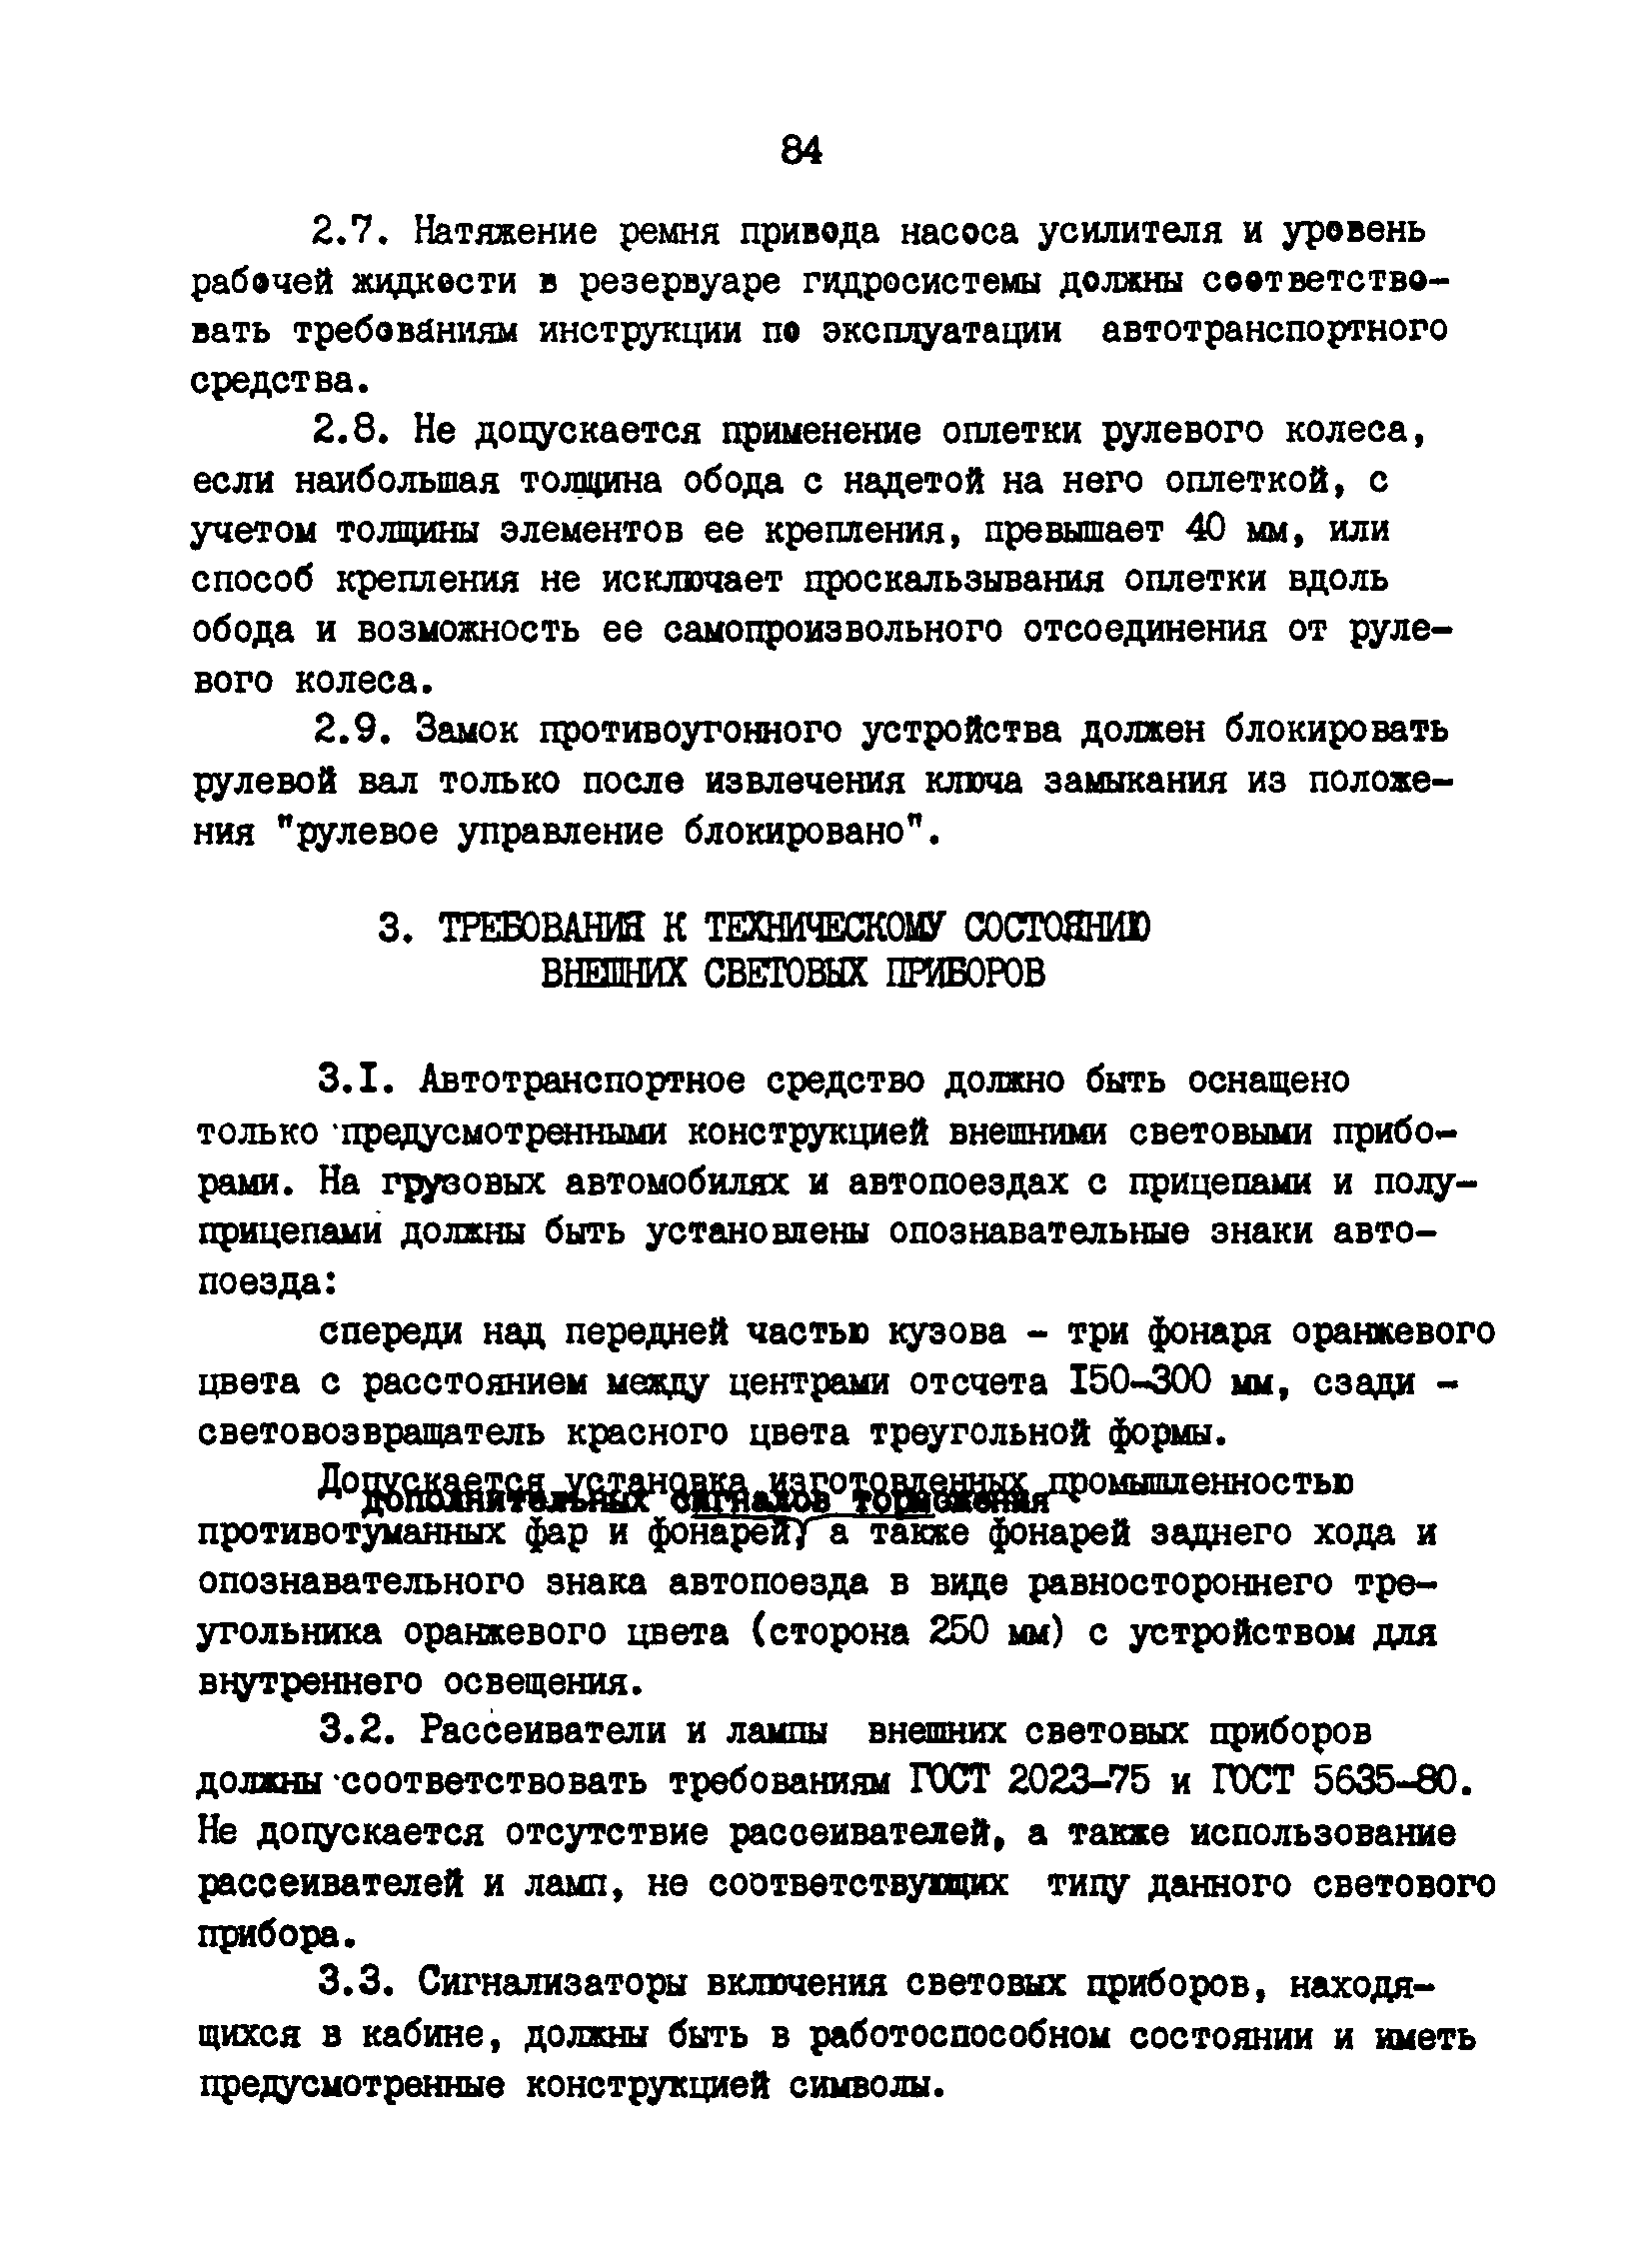 РД 200-РСФСР-12-0071-86-14